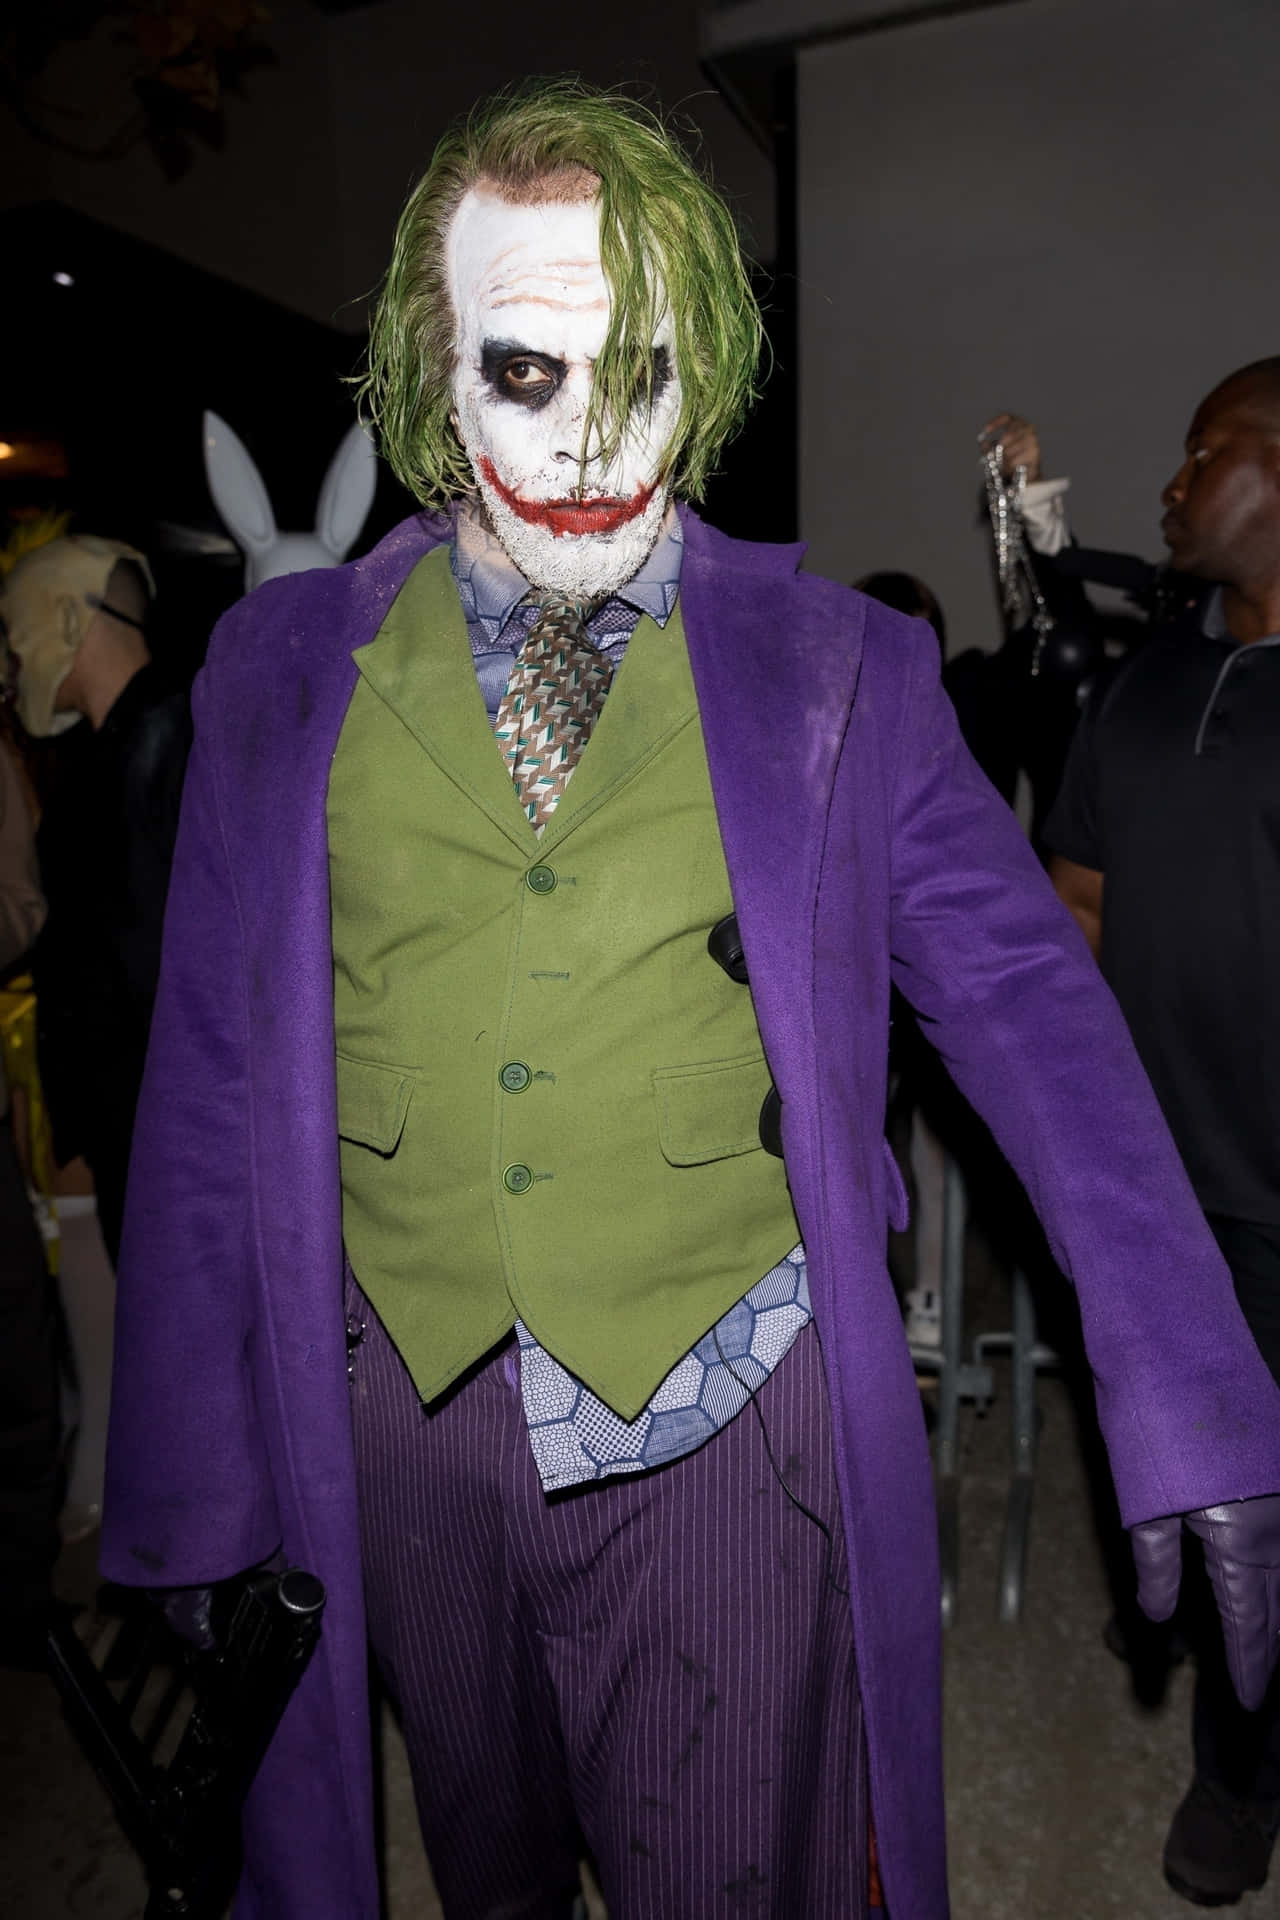 En mand iført joker-kostume griner ondsindet.